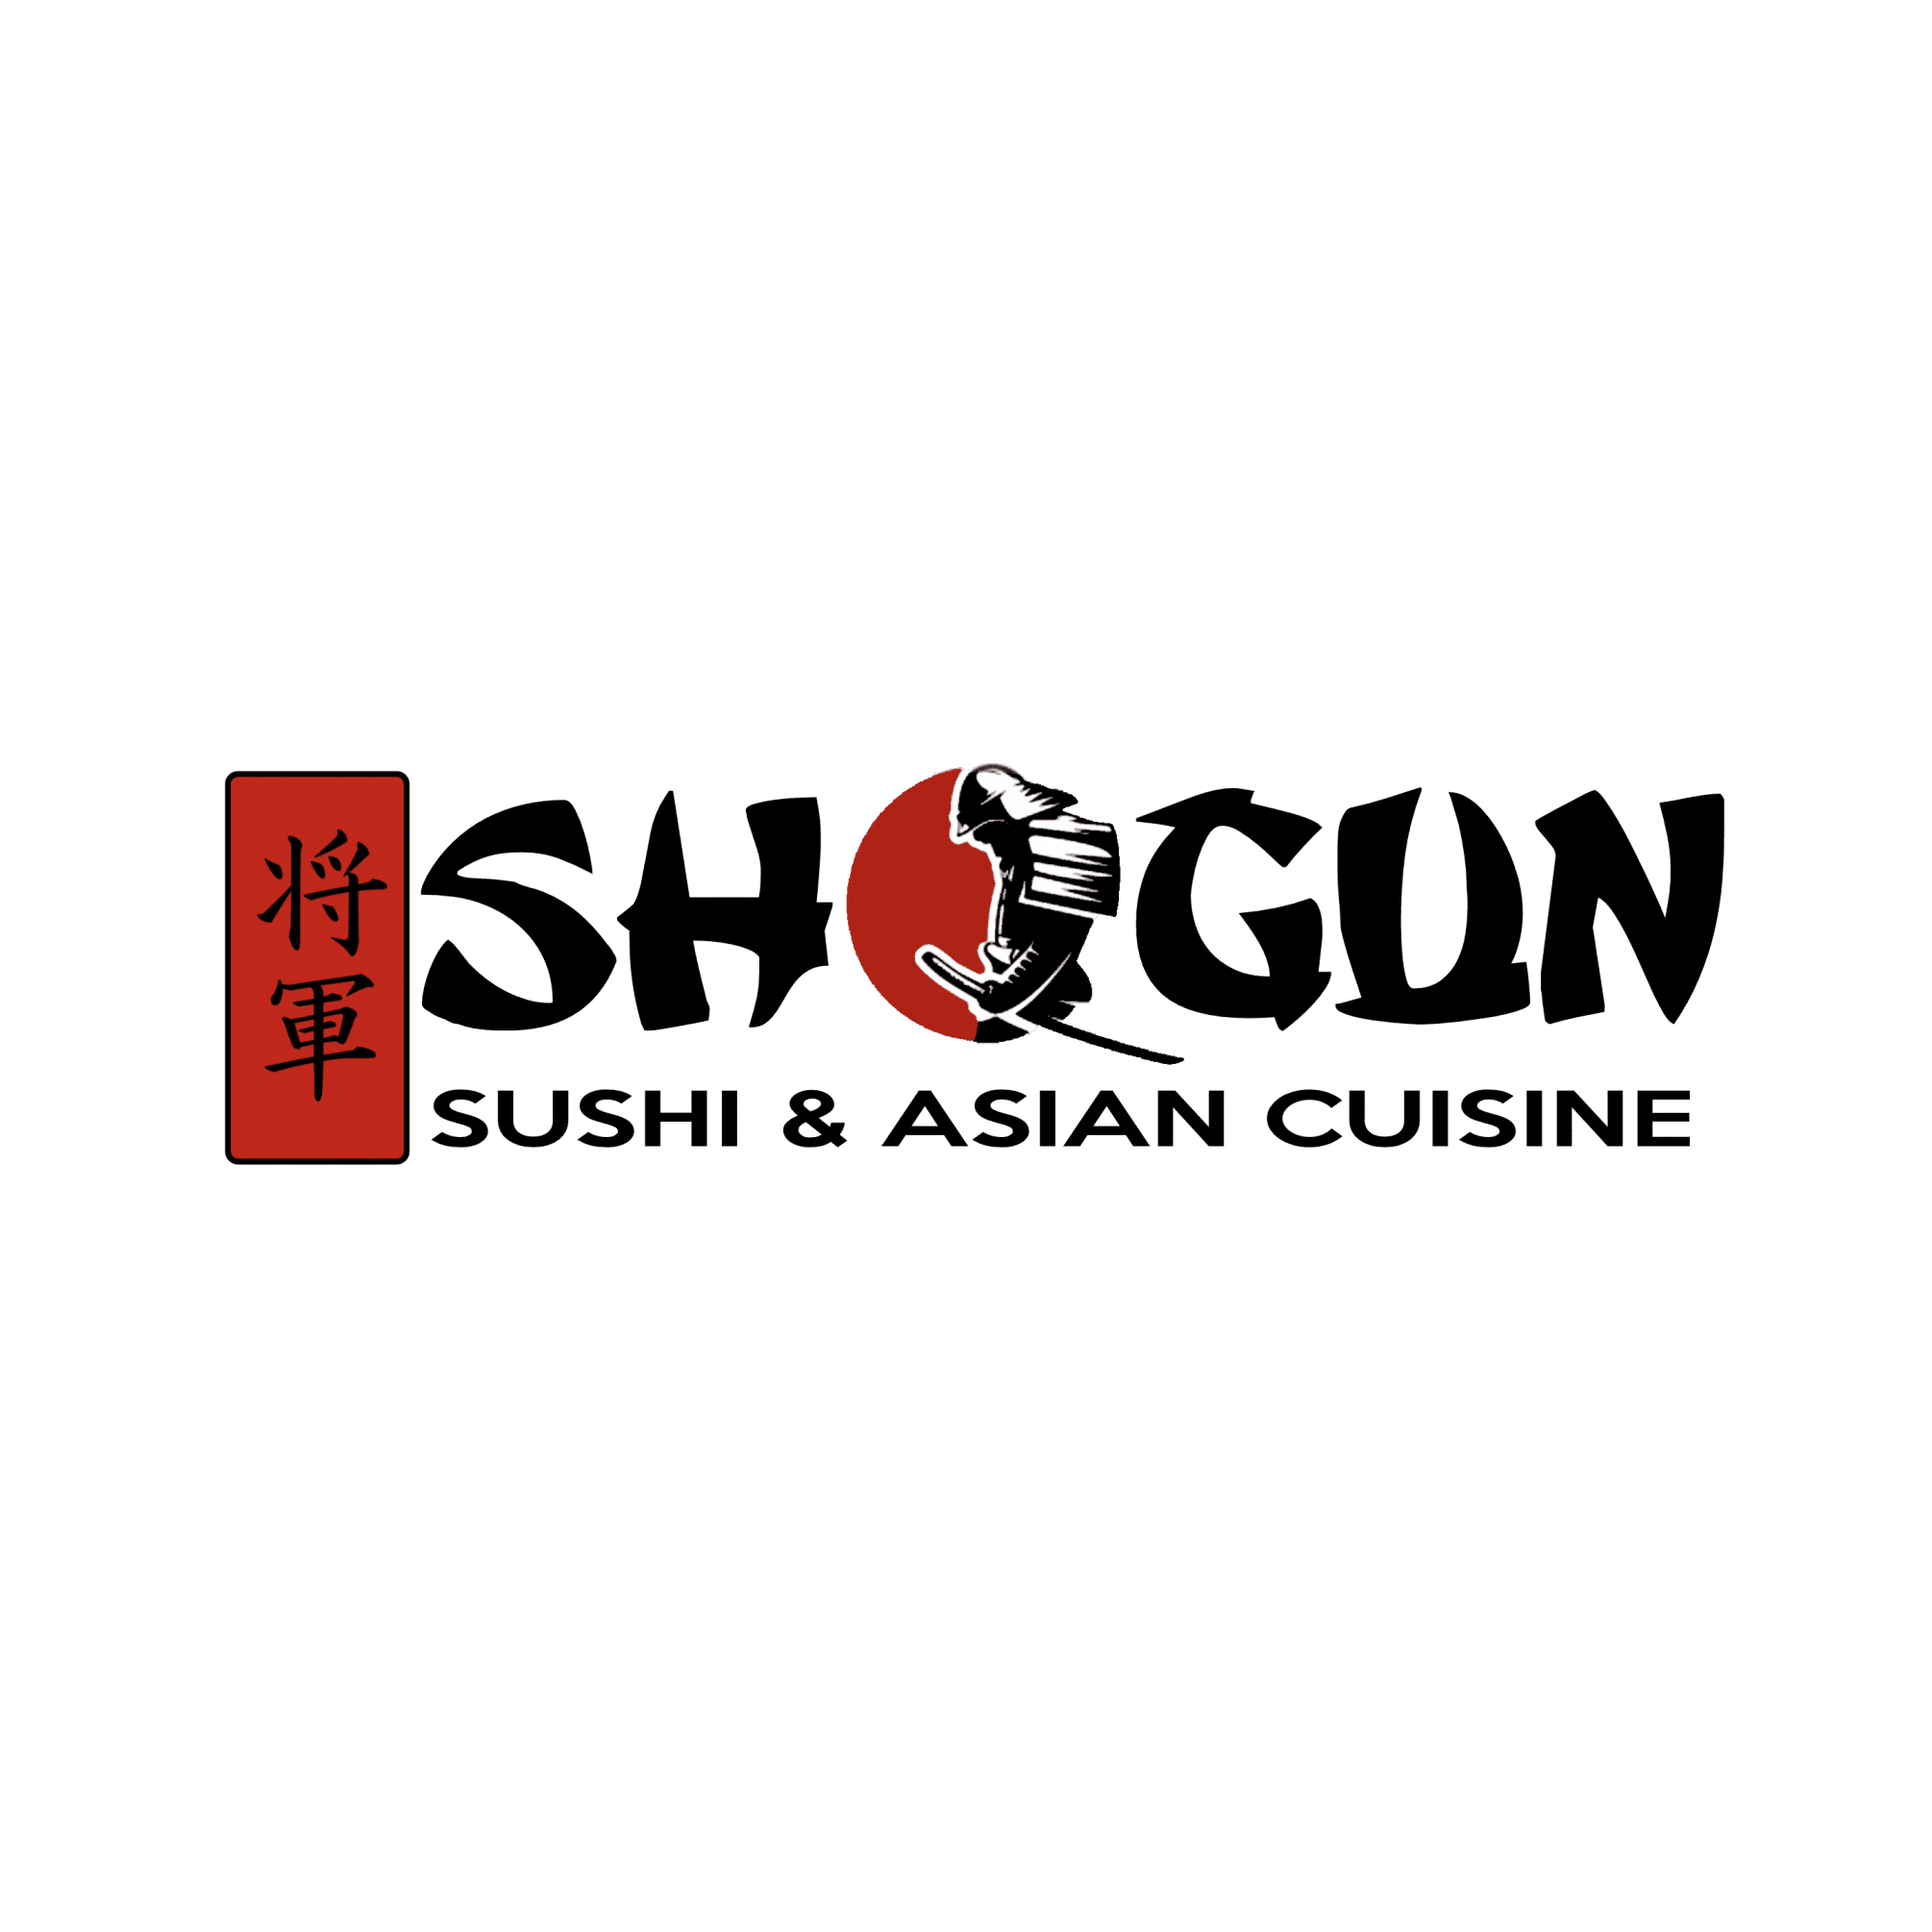 Shogun Cuisine